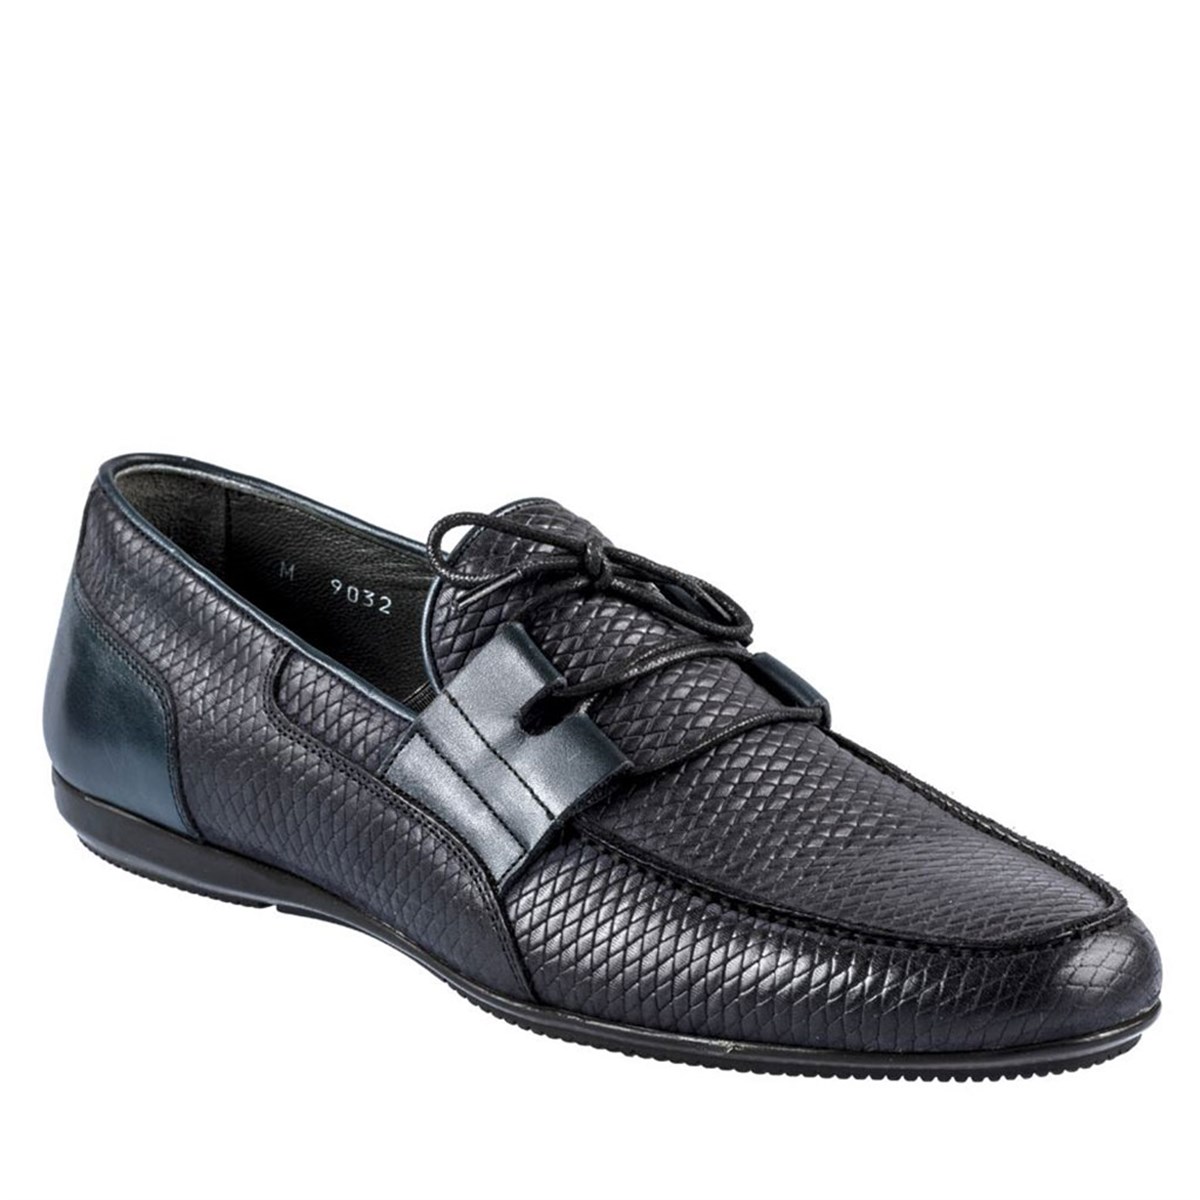 Erkek Yazlık Hakiki Deri Bağcıksız Günlük Ayakkabı, Renk: Lacivert, Beden: 39